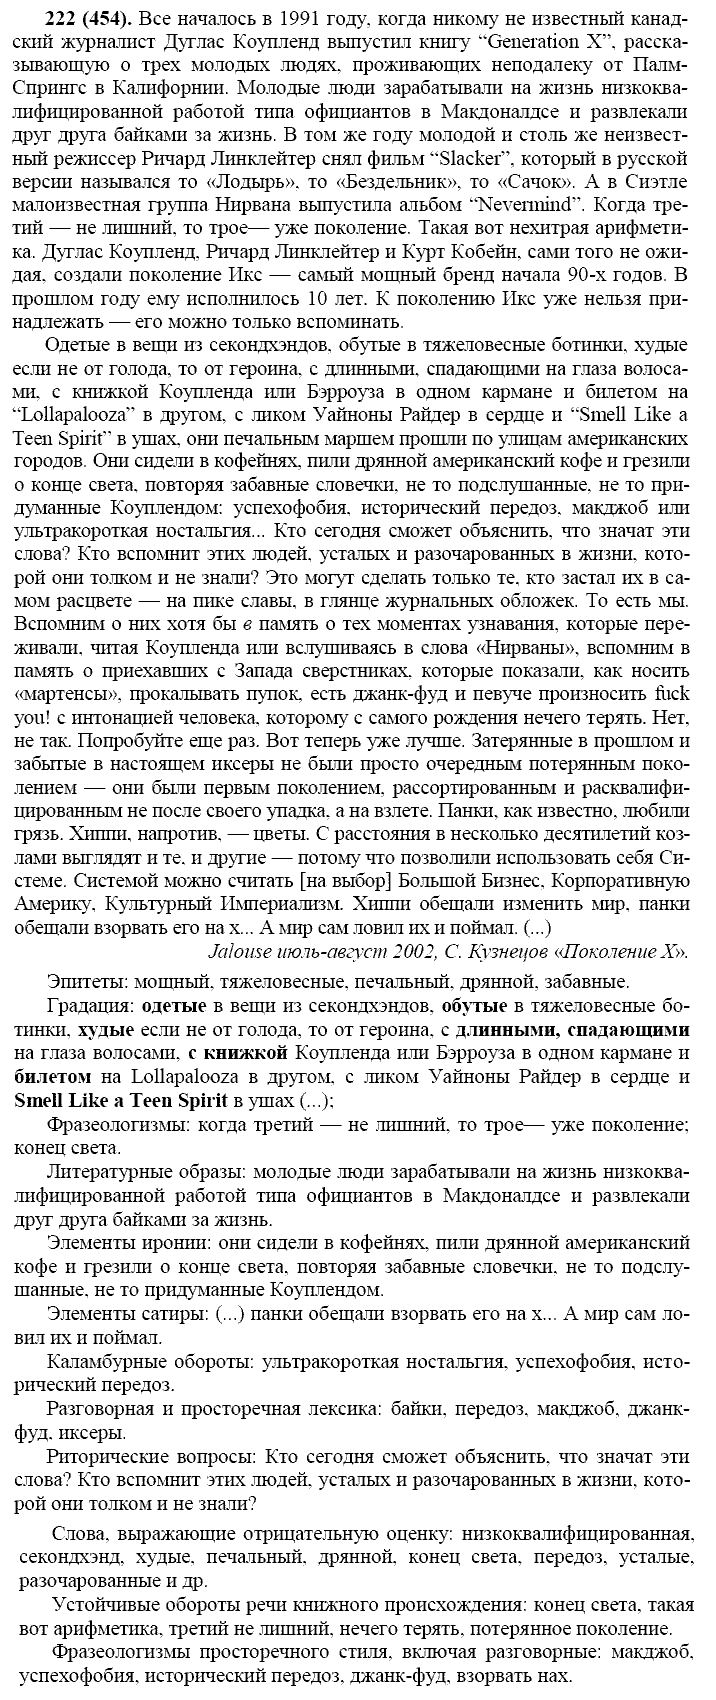 Русский язык, 11 класс, Власенков, Рыбченков, 2009-2014, задание: 222 (454)